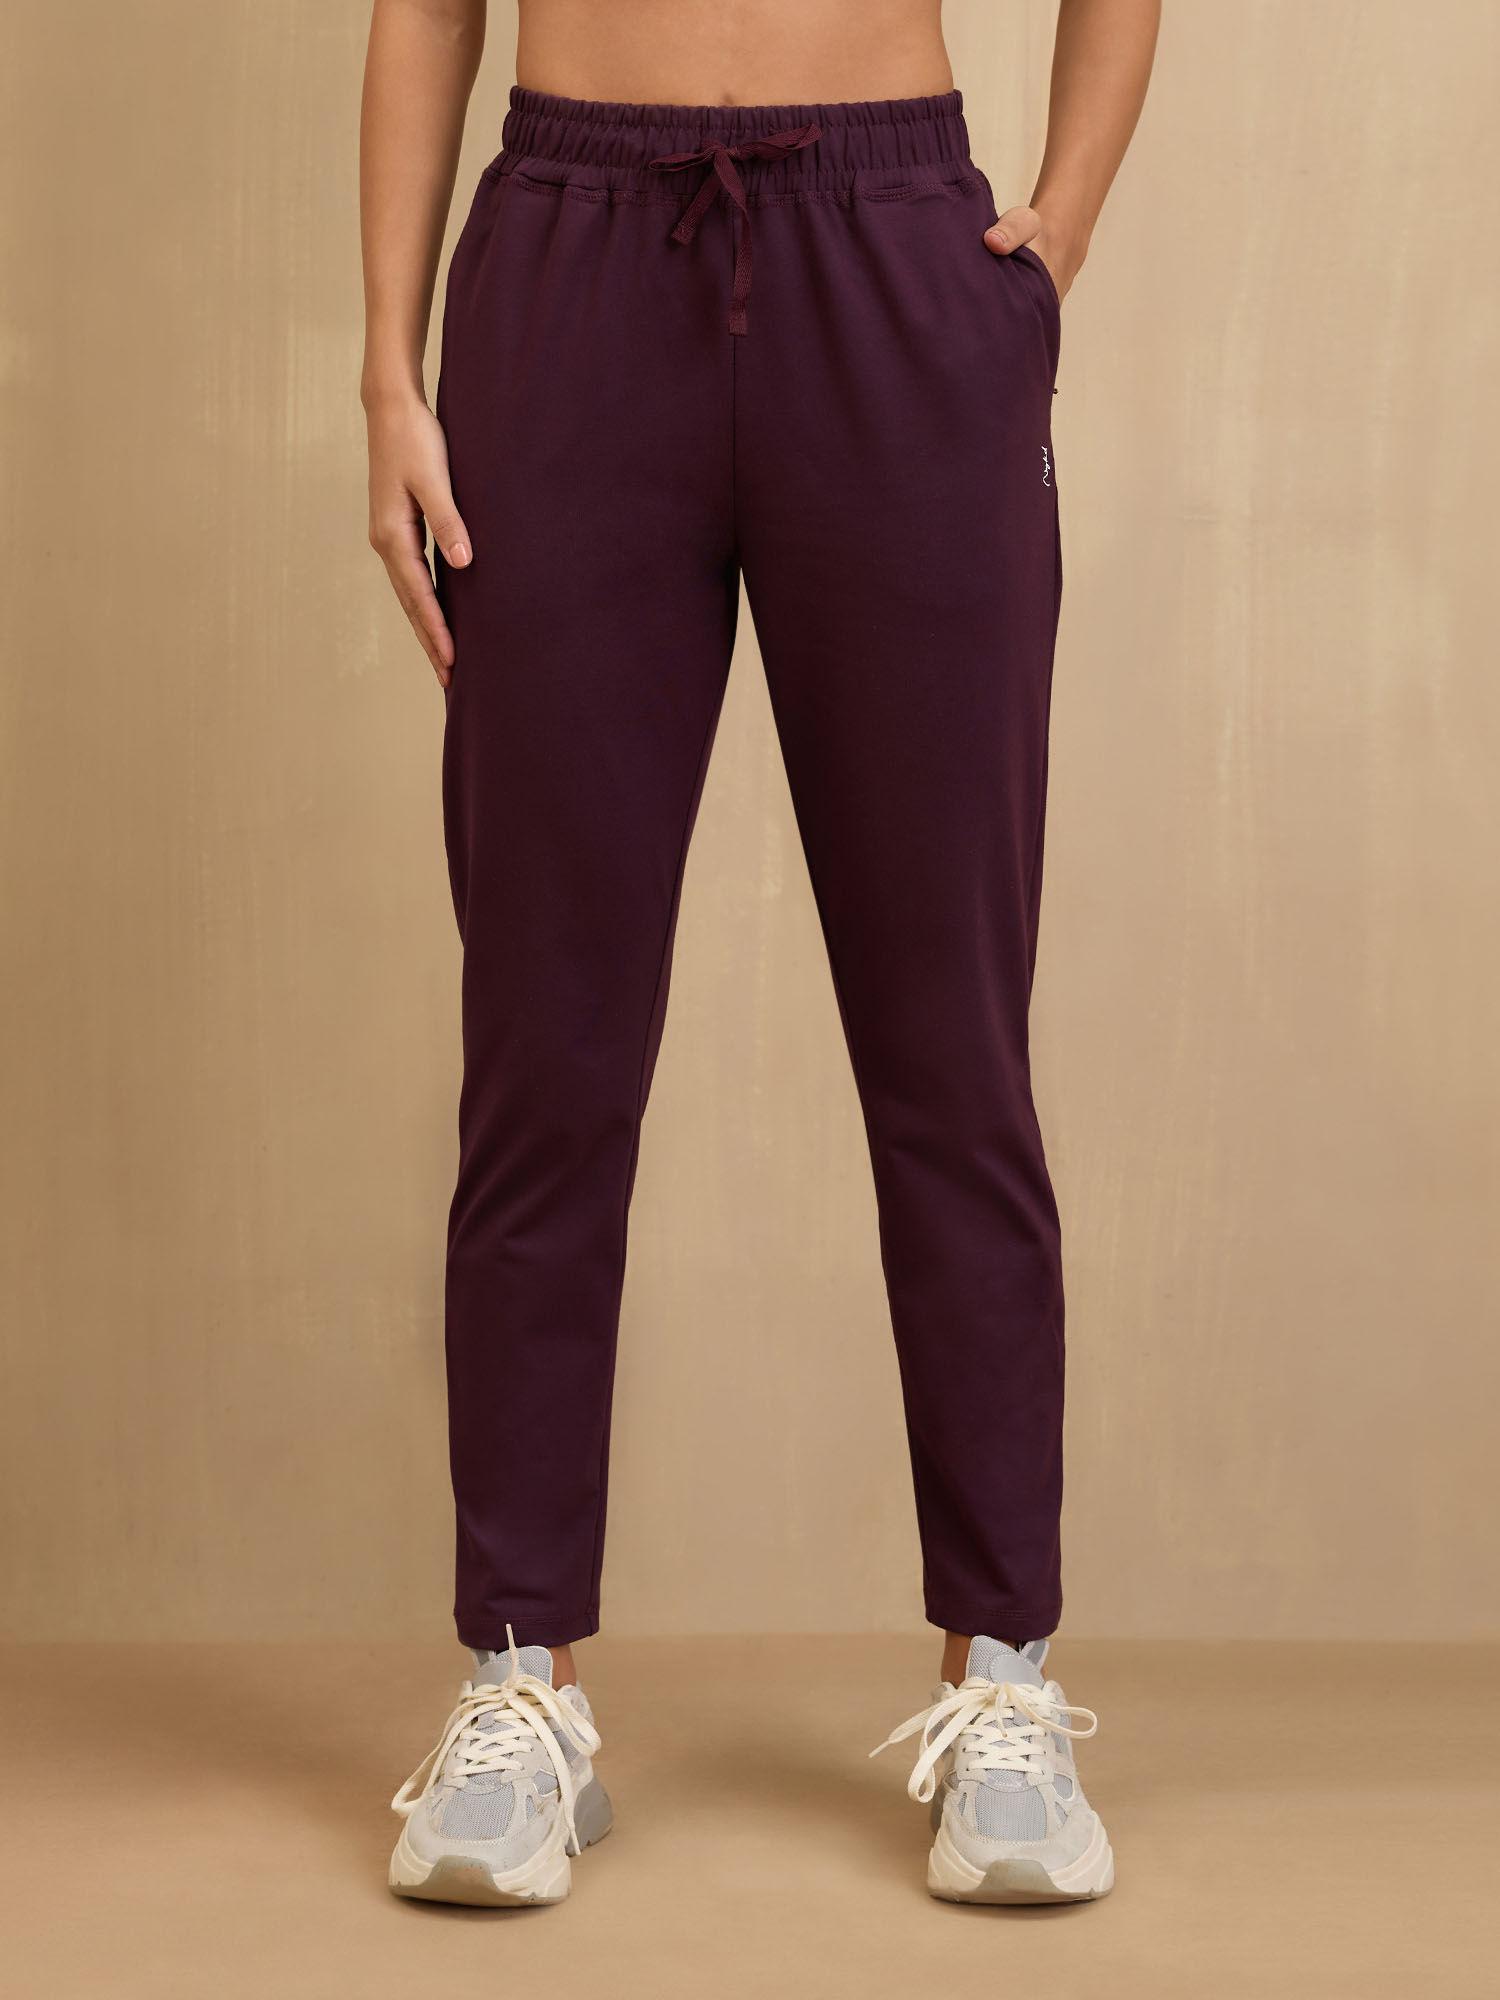 cotton comfort pants -nyat502-grape